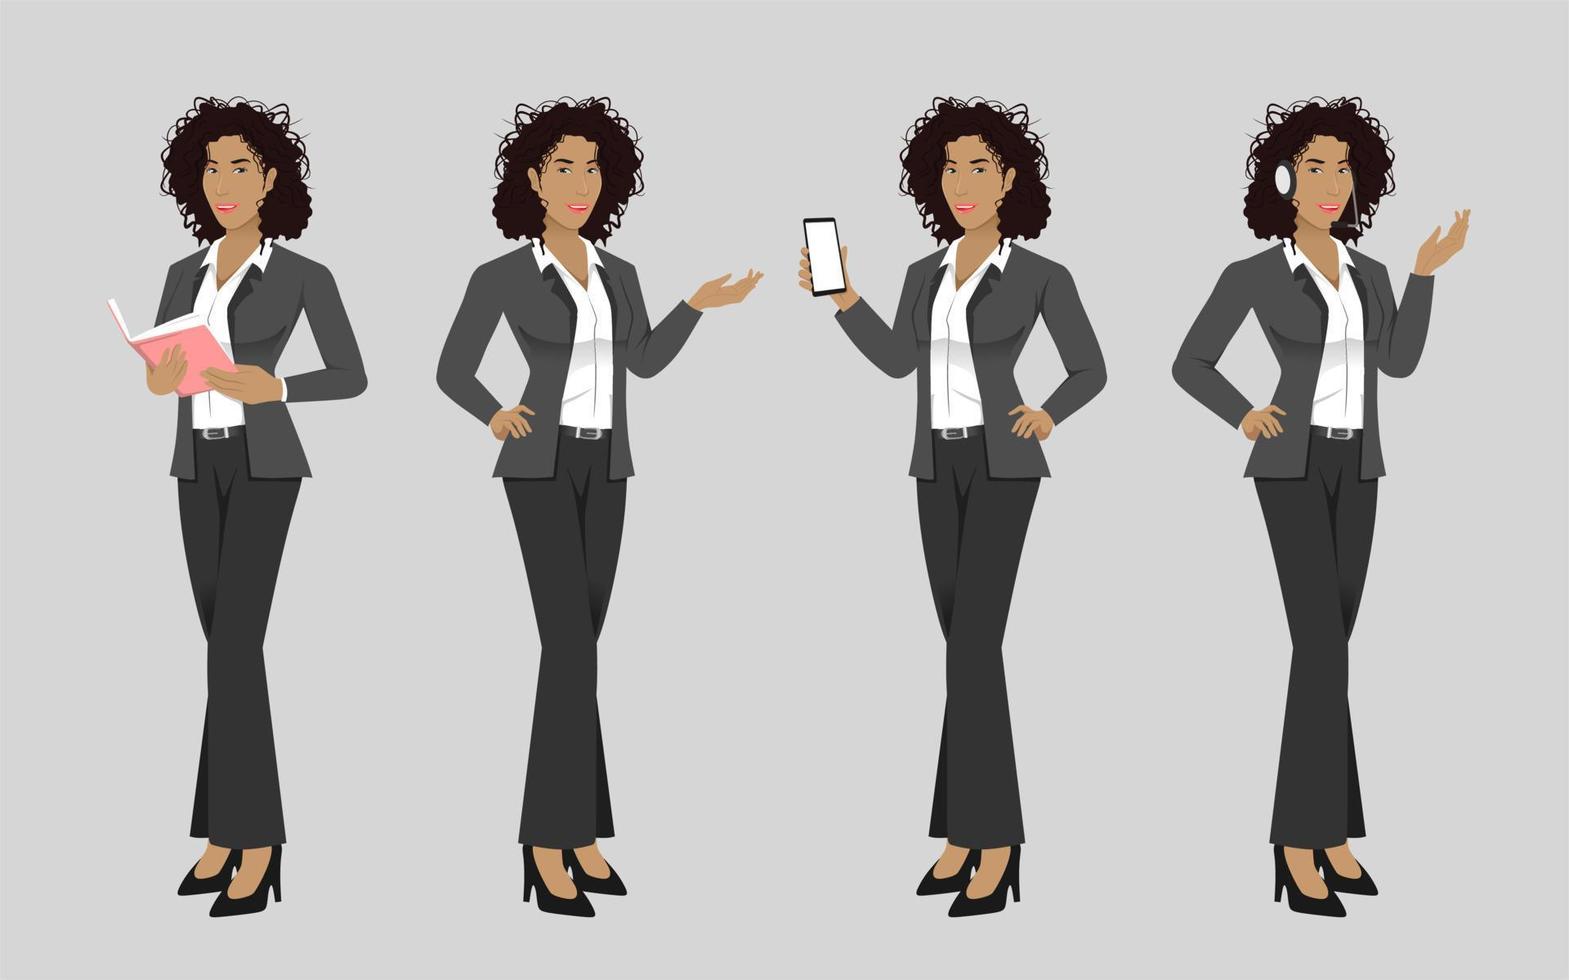 mulher de negócios elegante com penteado afro em poses diferentes ilustração vetorial isolada vetor